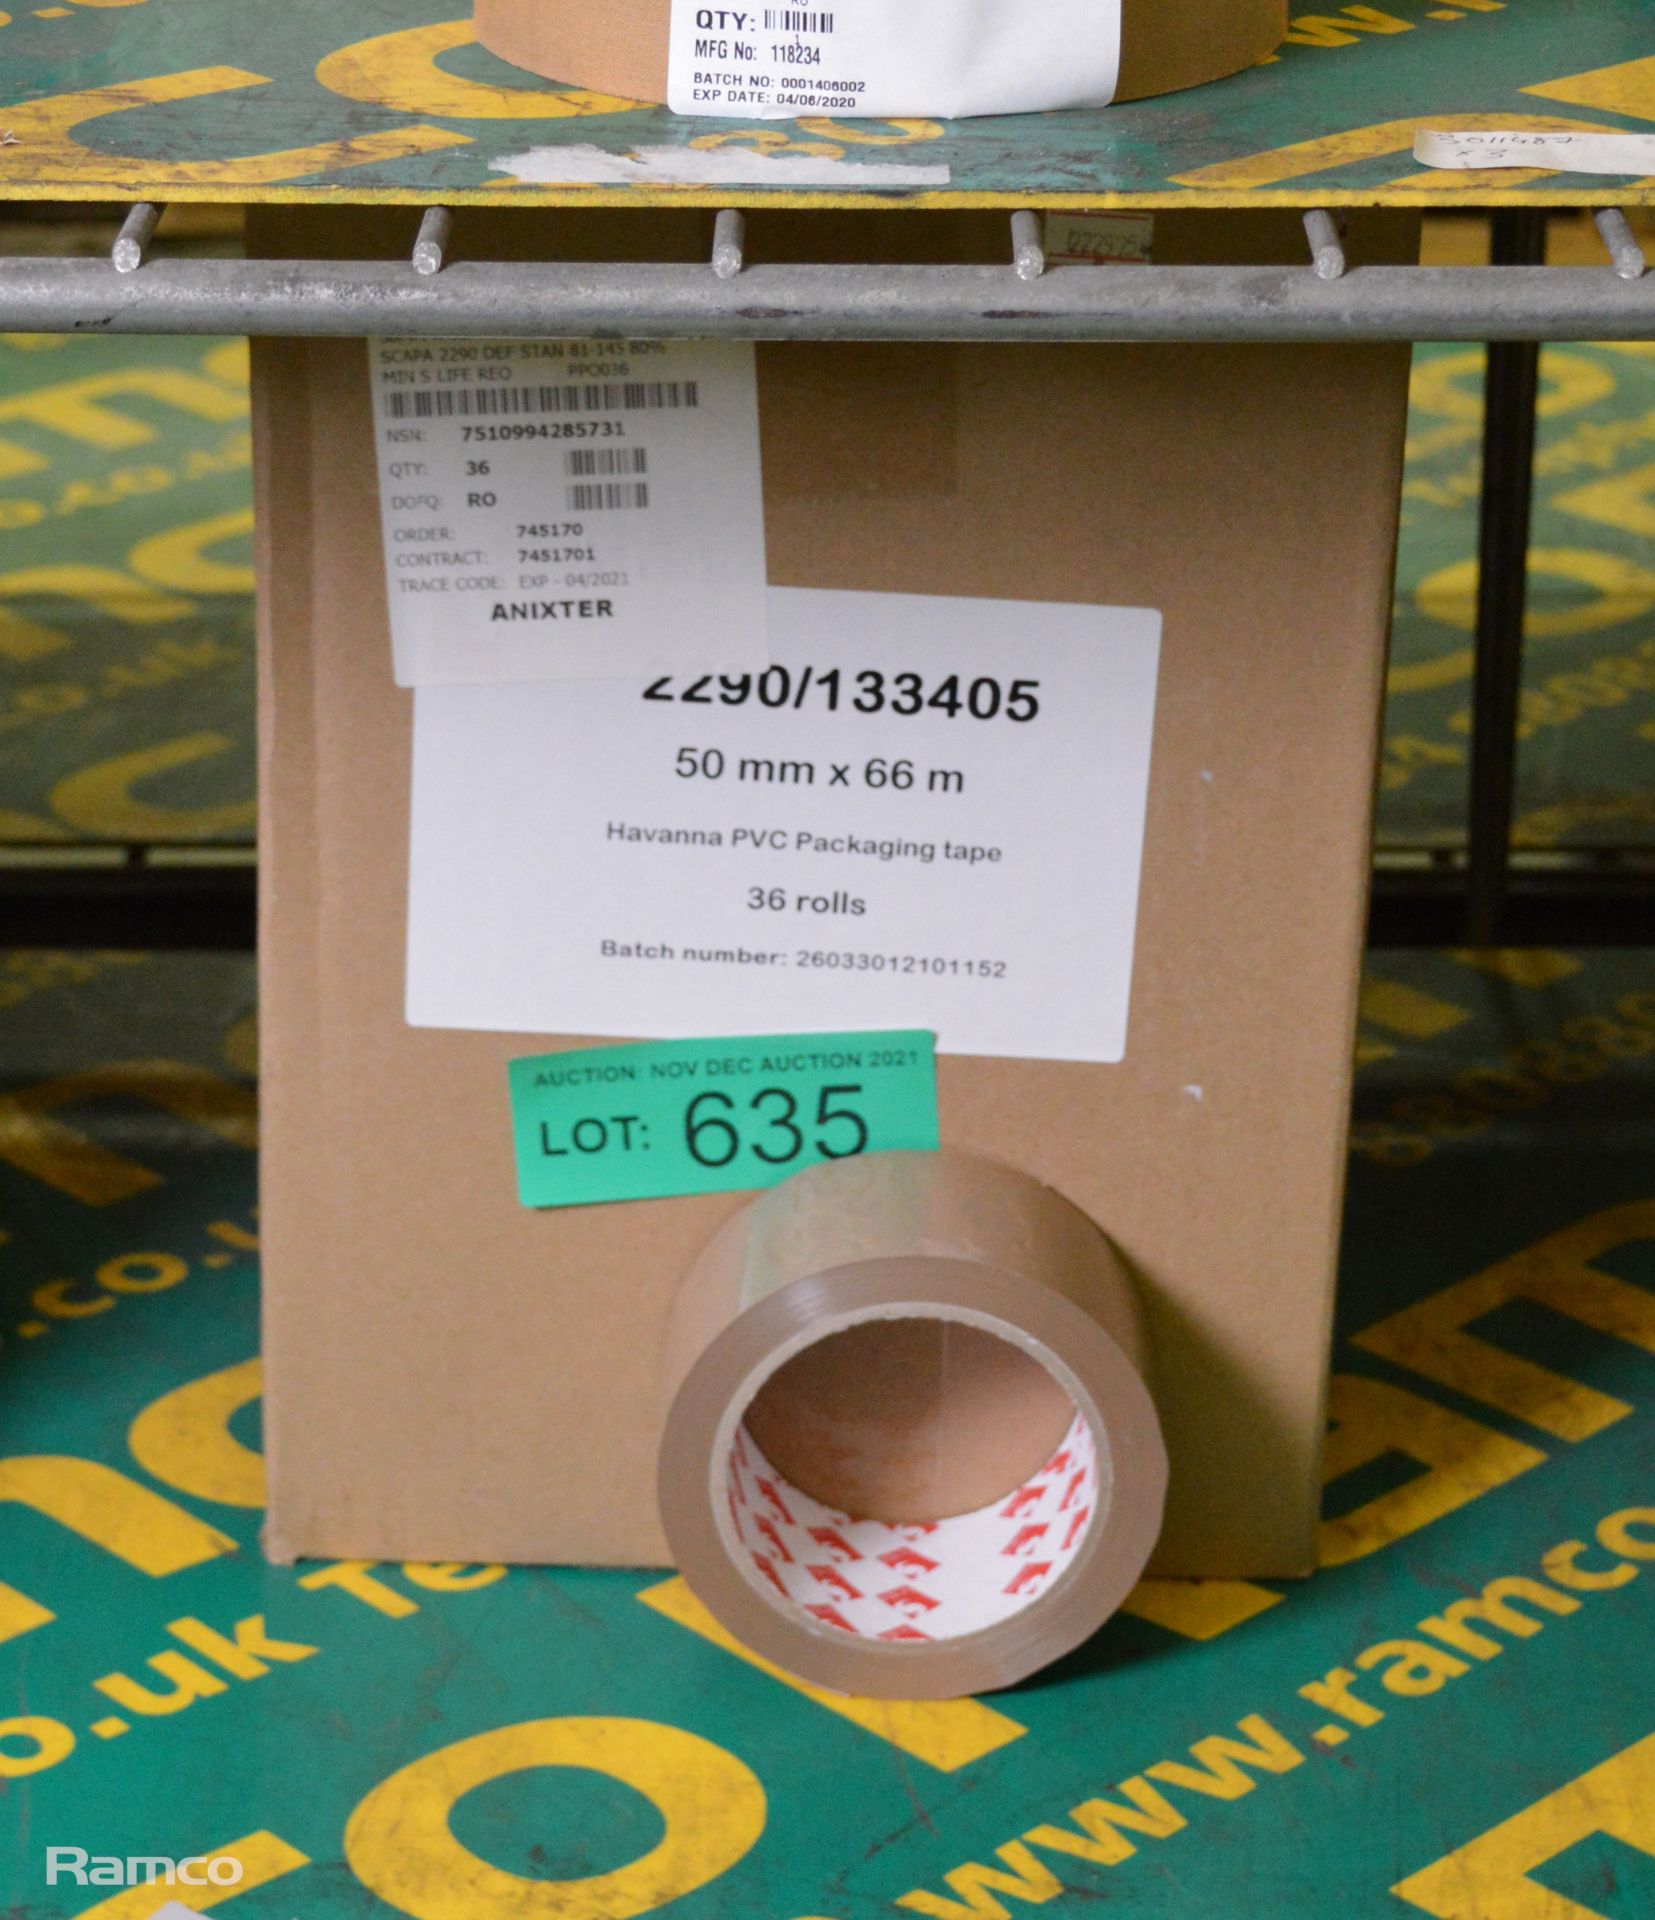 Scapa 2290 Havanna PVC packaging tape - 50mm x 66M - 36 rolls per box - 1 box